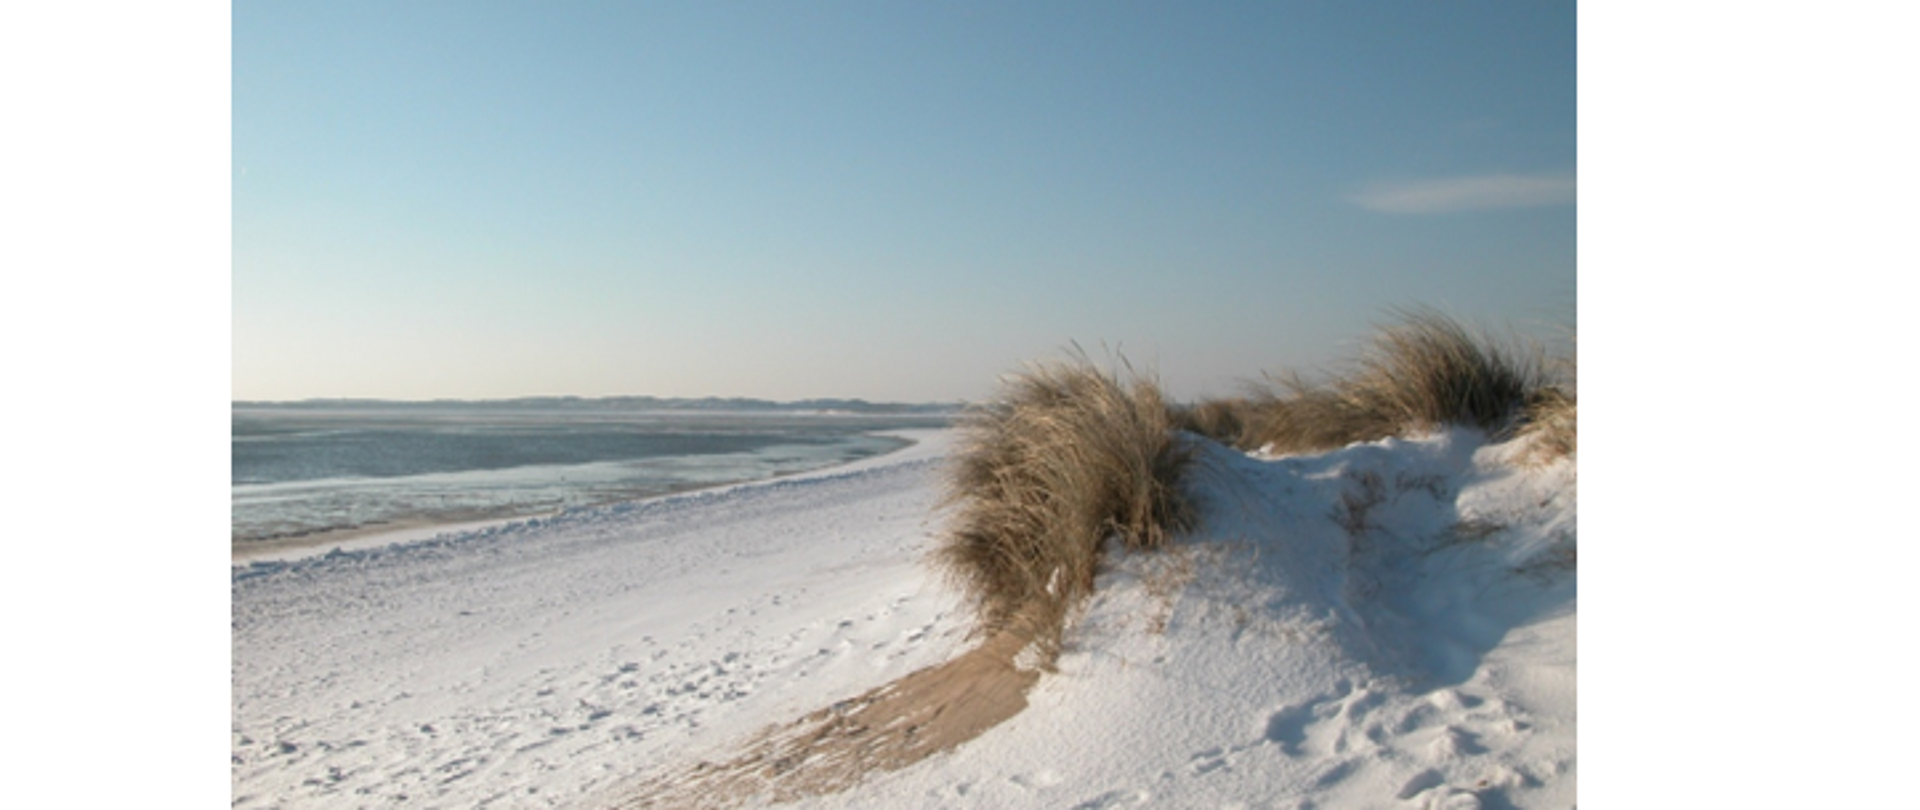 Zdjęcie przedstawia plażę w okresie zimowym. Po lewej stronie fotografii znajduje się niewzburzone morze. W centralnej części zdjęcia widoczna jest plaża pokryta śniegiem i małe wydmy z roślinnością oraz niewielki obszar piasku bez śniegu. Plaża jest pusta. W górnej części zdjęcia widać błękitne bezchmurne niebo. 